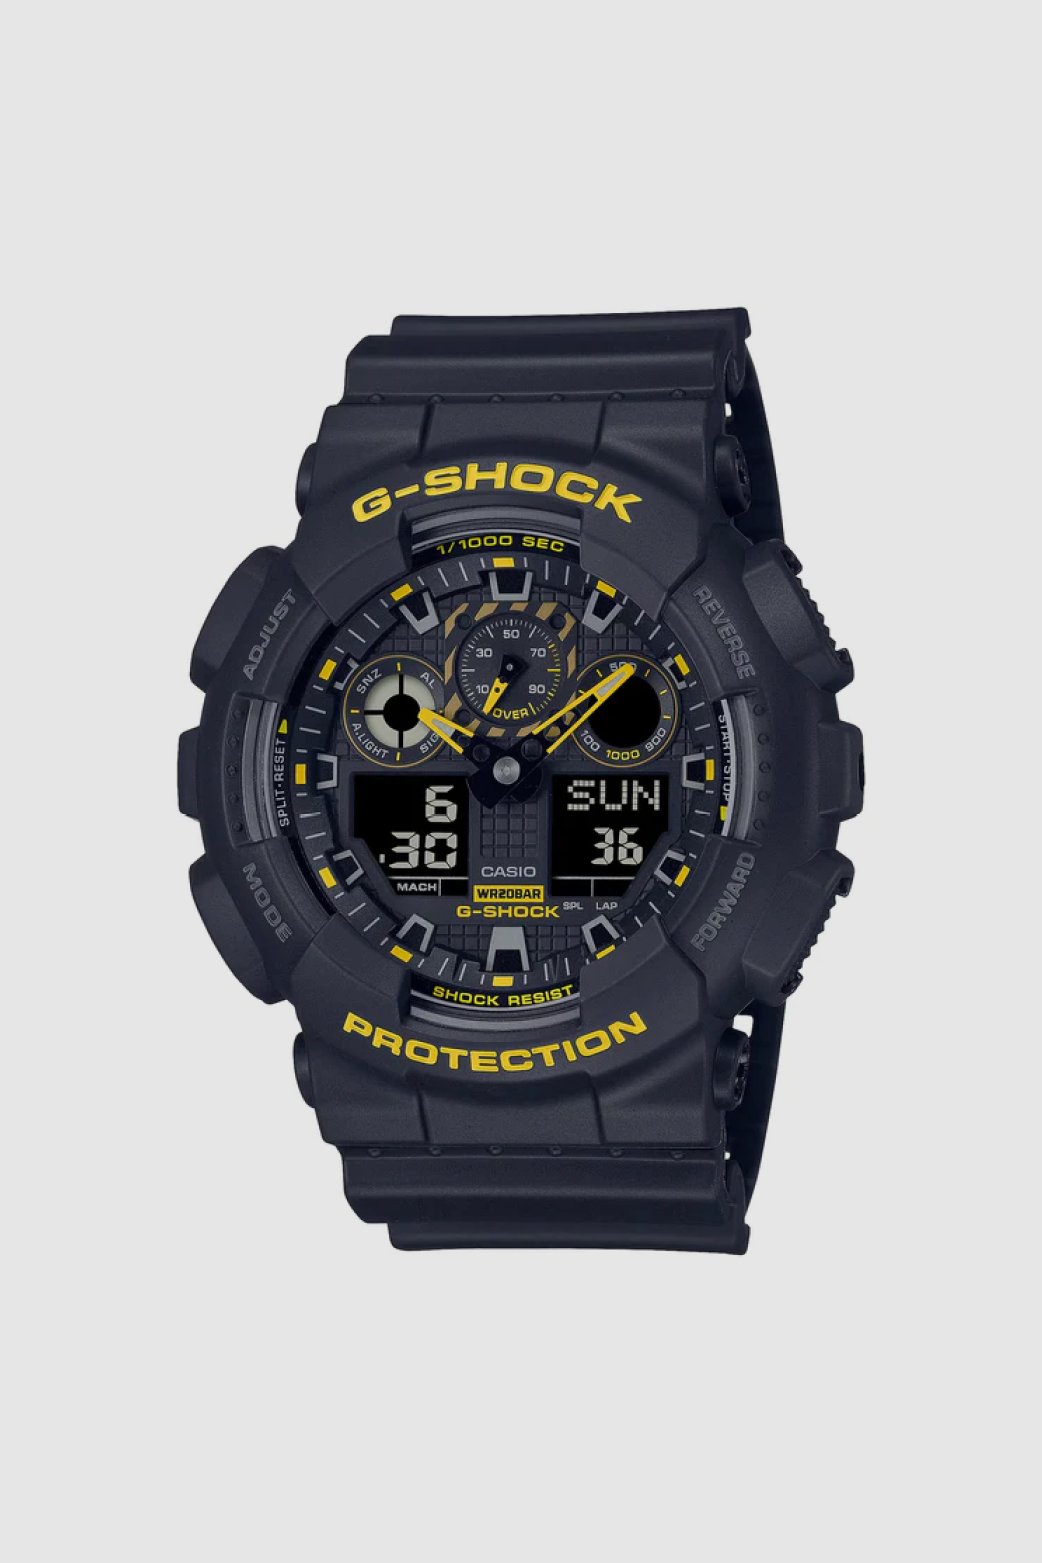 G-Shock GWB5600CY1 Watch - Black/Yellow - Due West